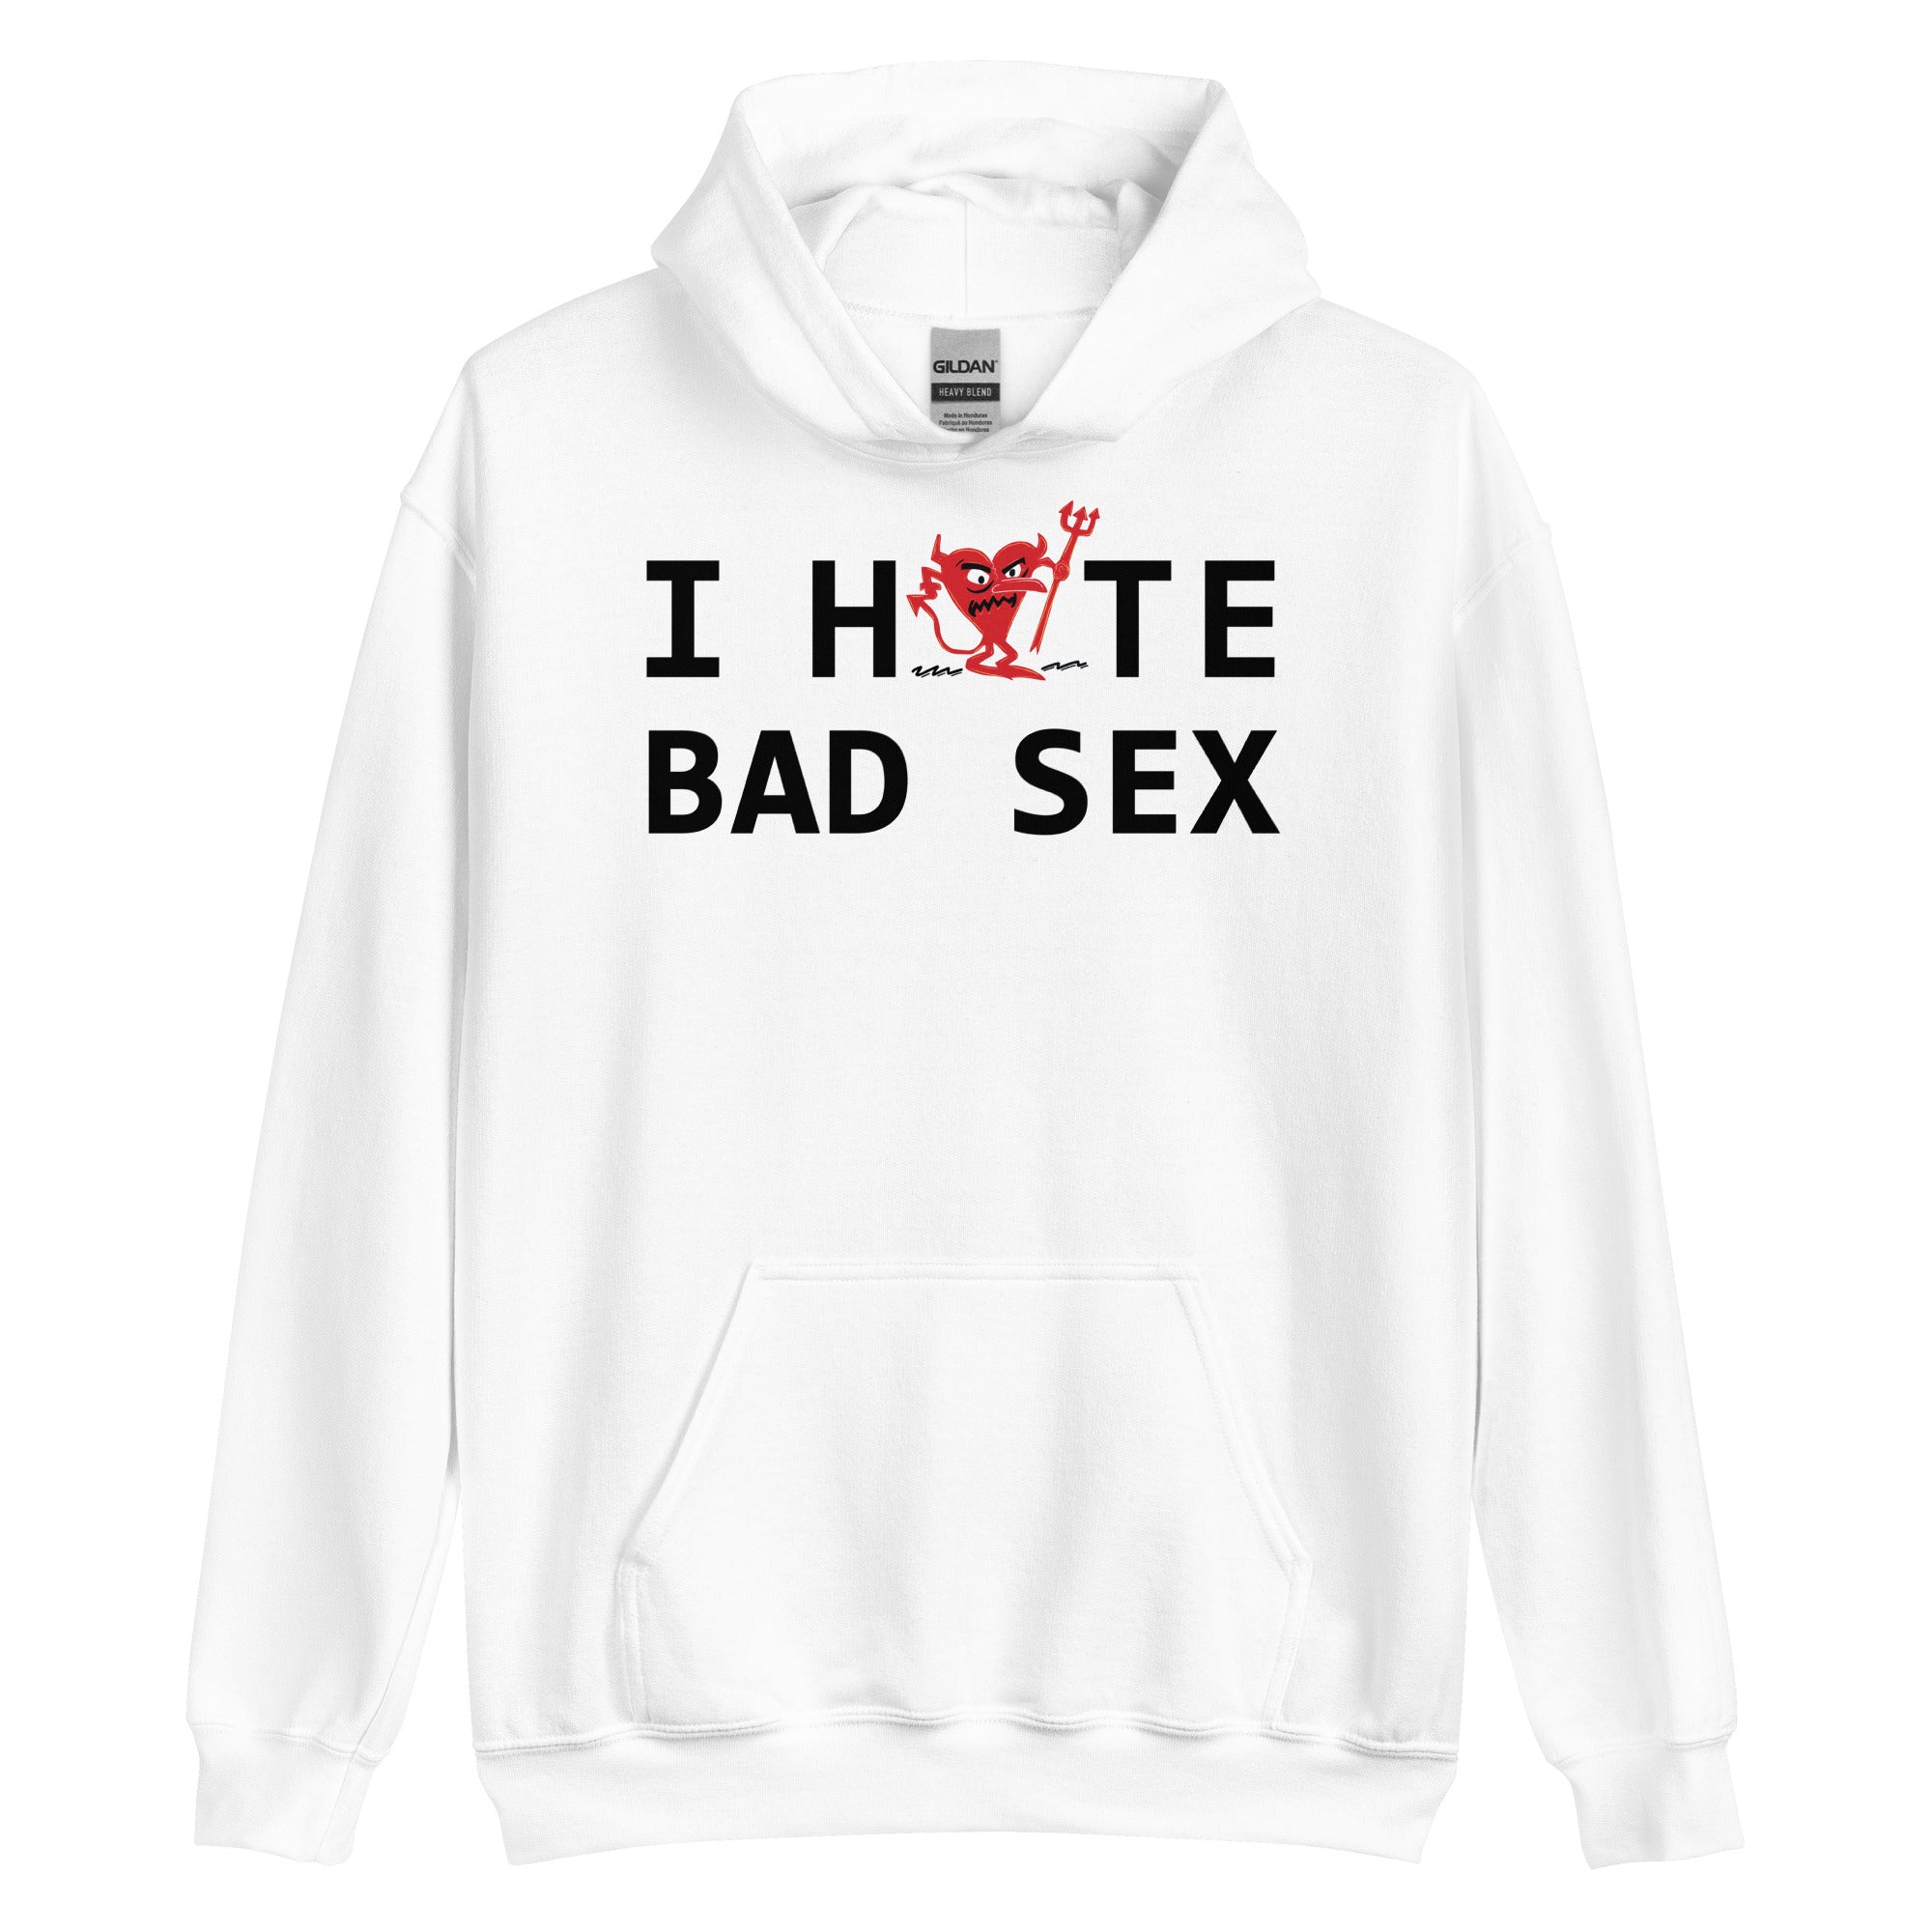 I Hate BAD SEX Unisex Hoodie